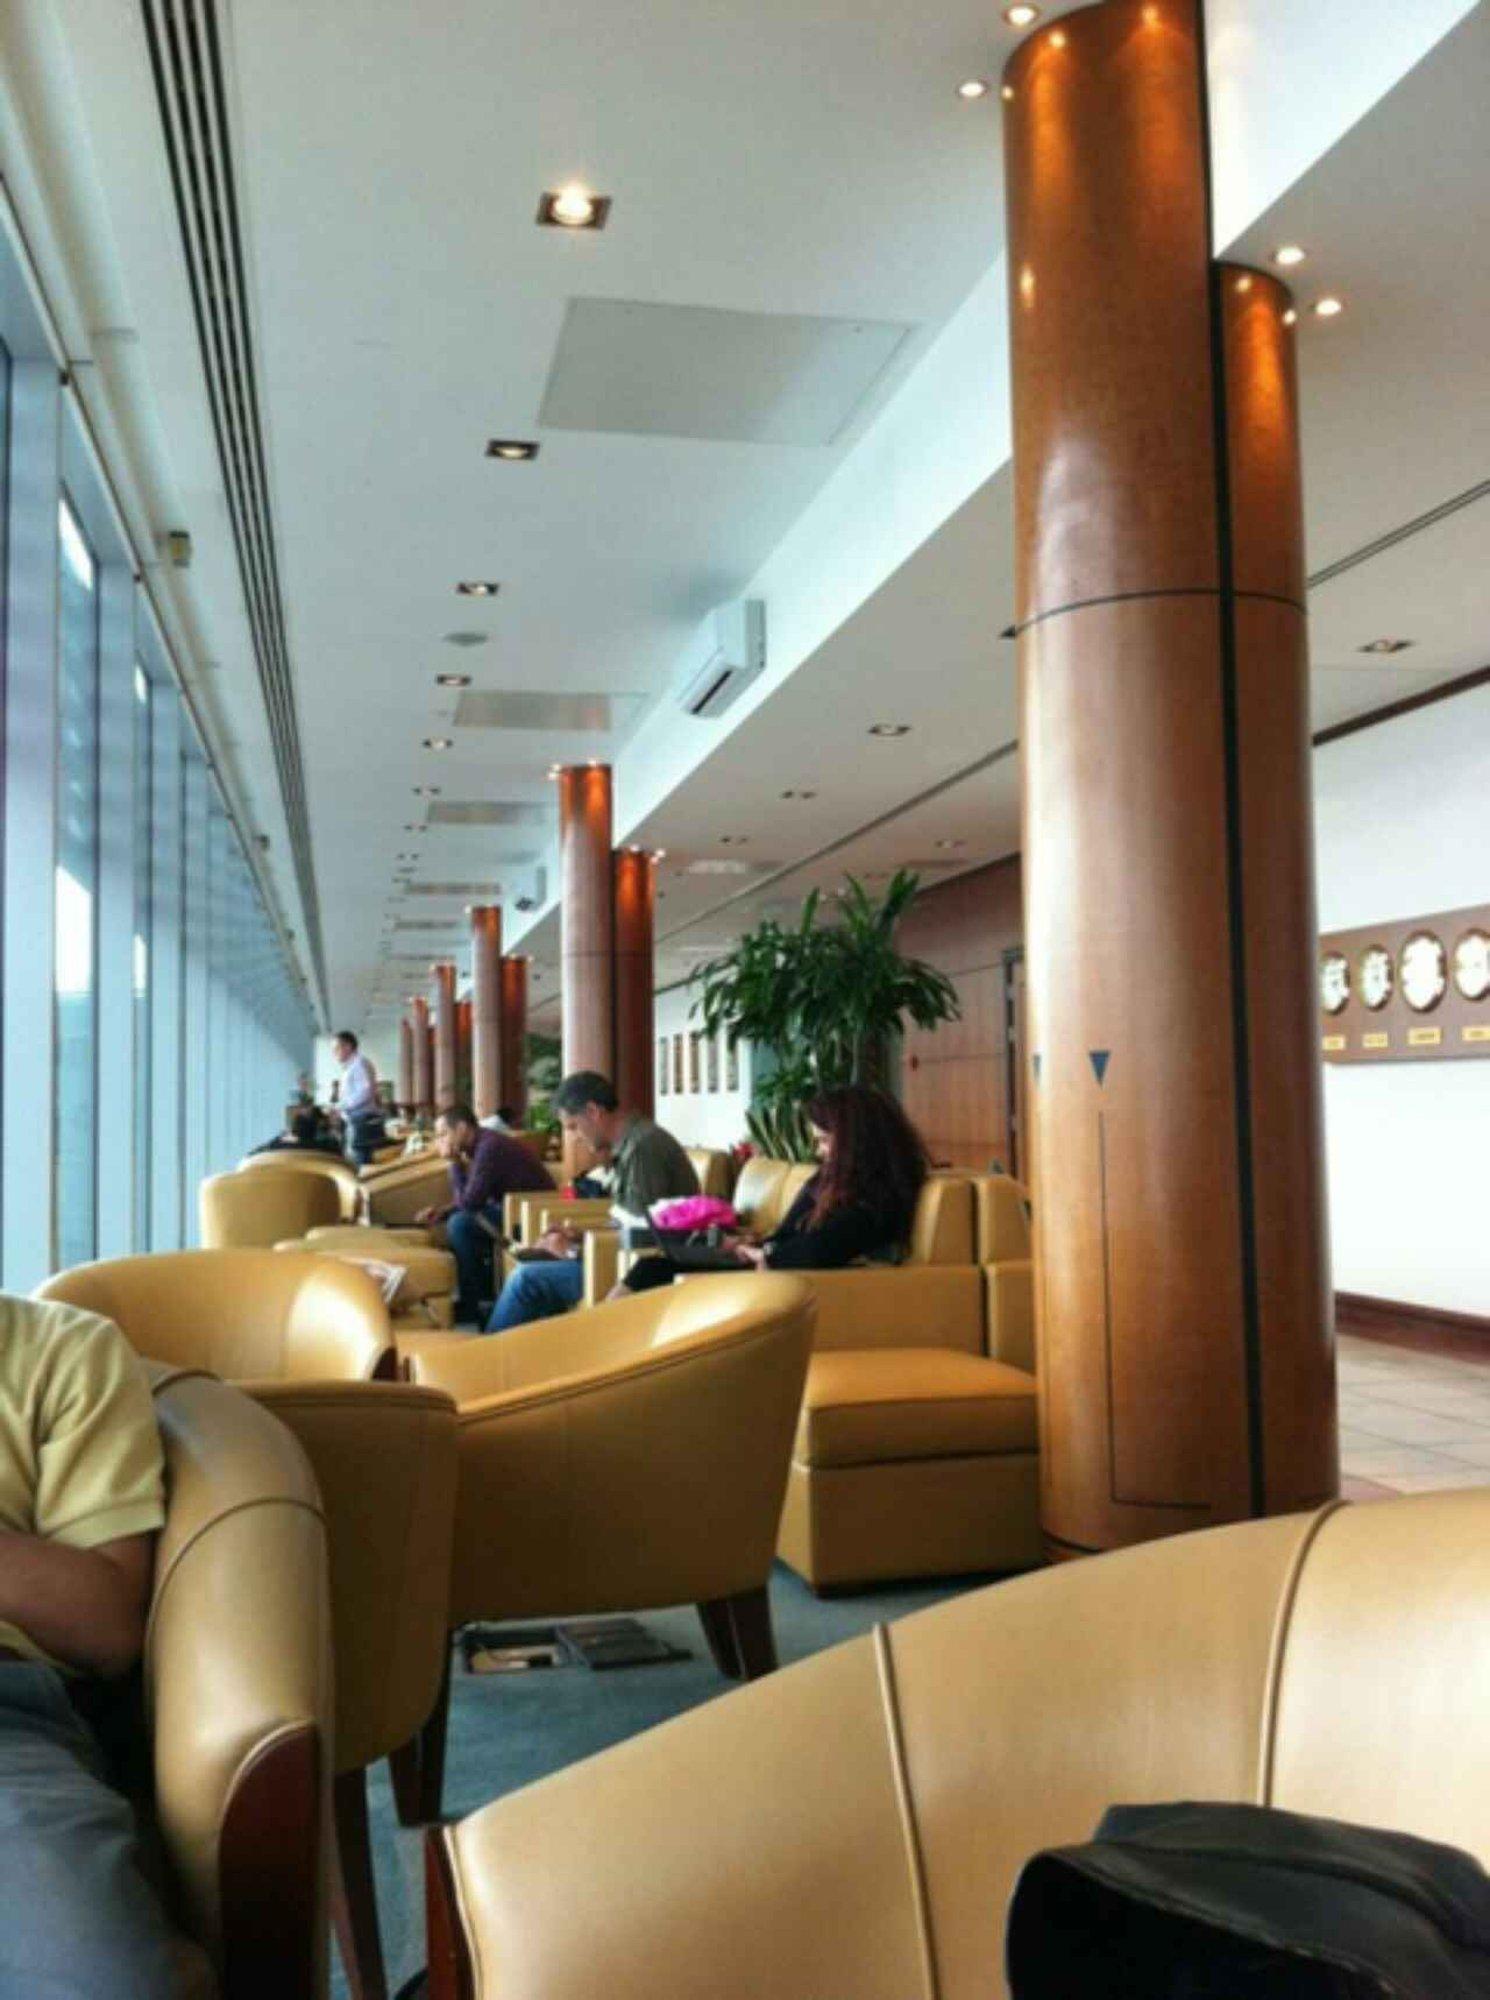 The Emirates Lounge image 8 of 10